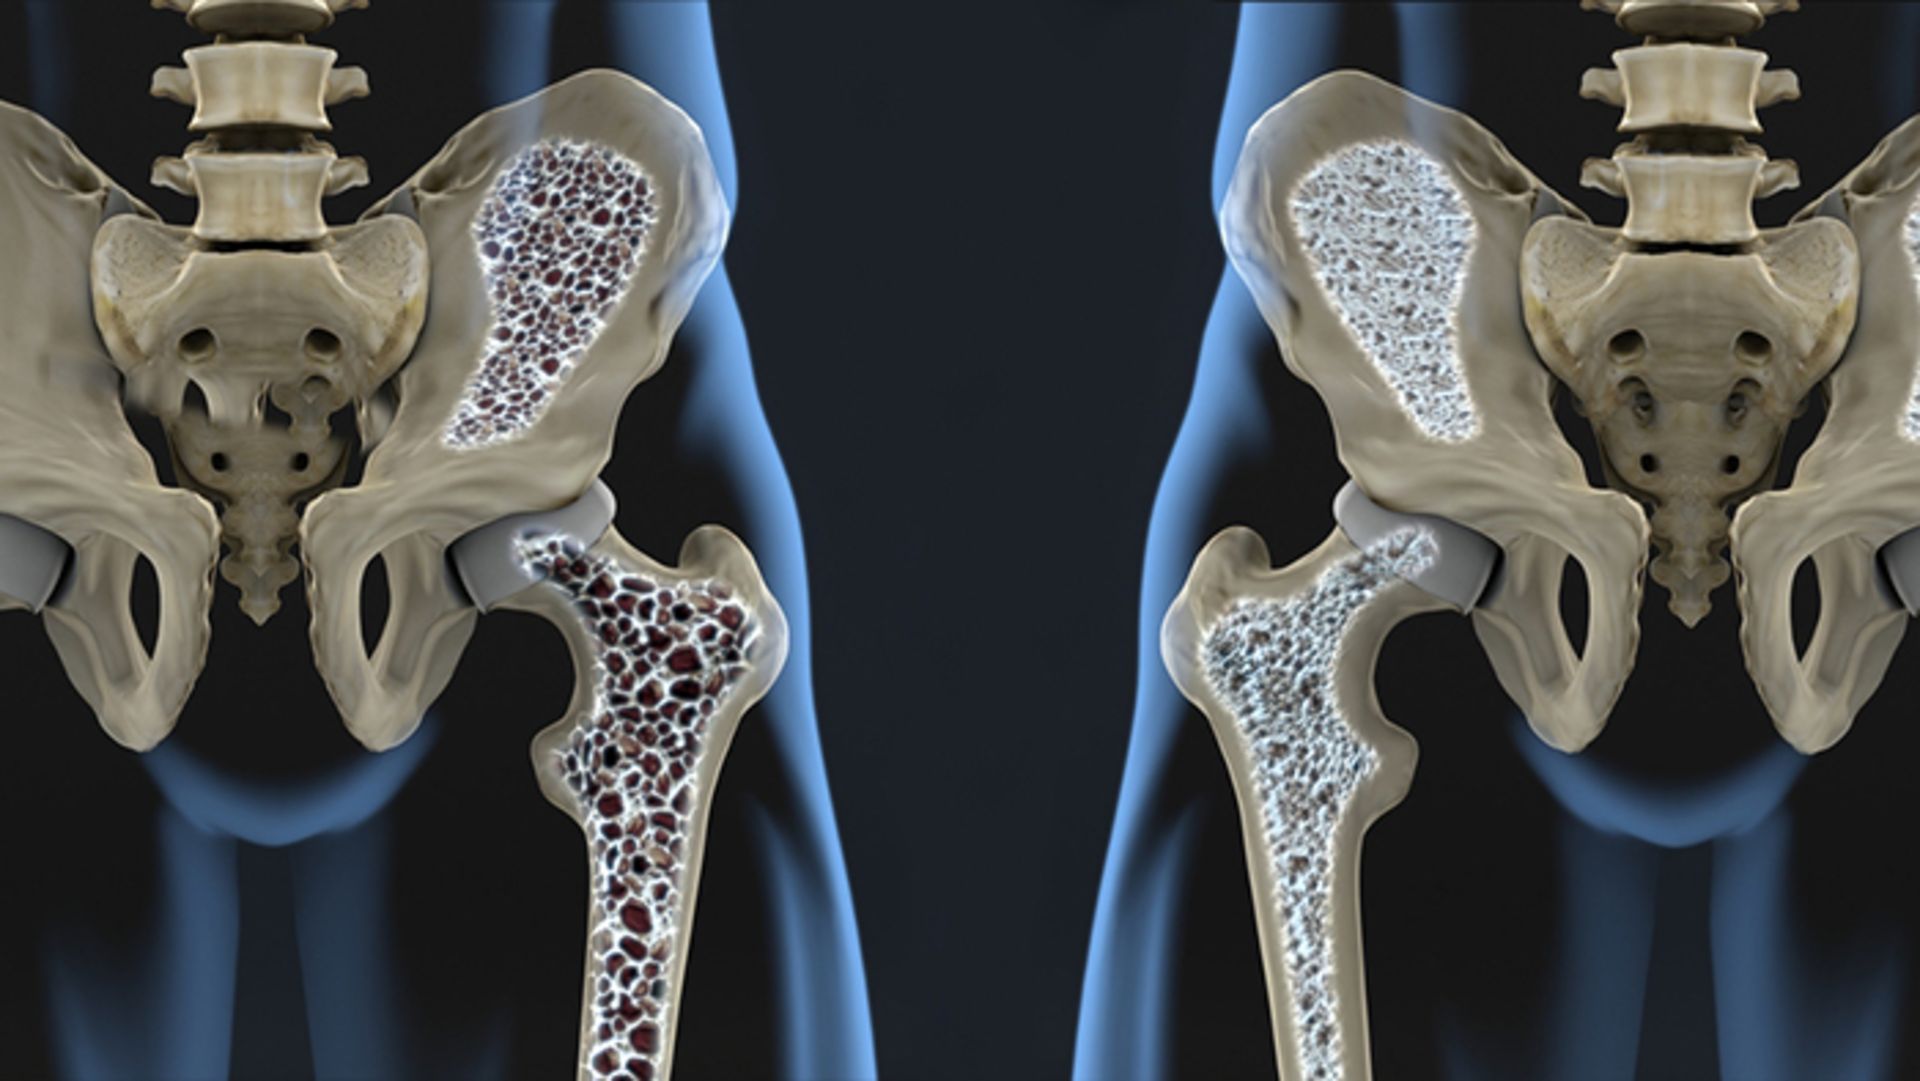 مرجع متخصصين ايران osteoporosis